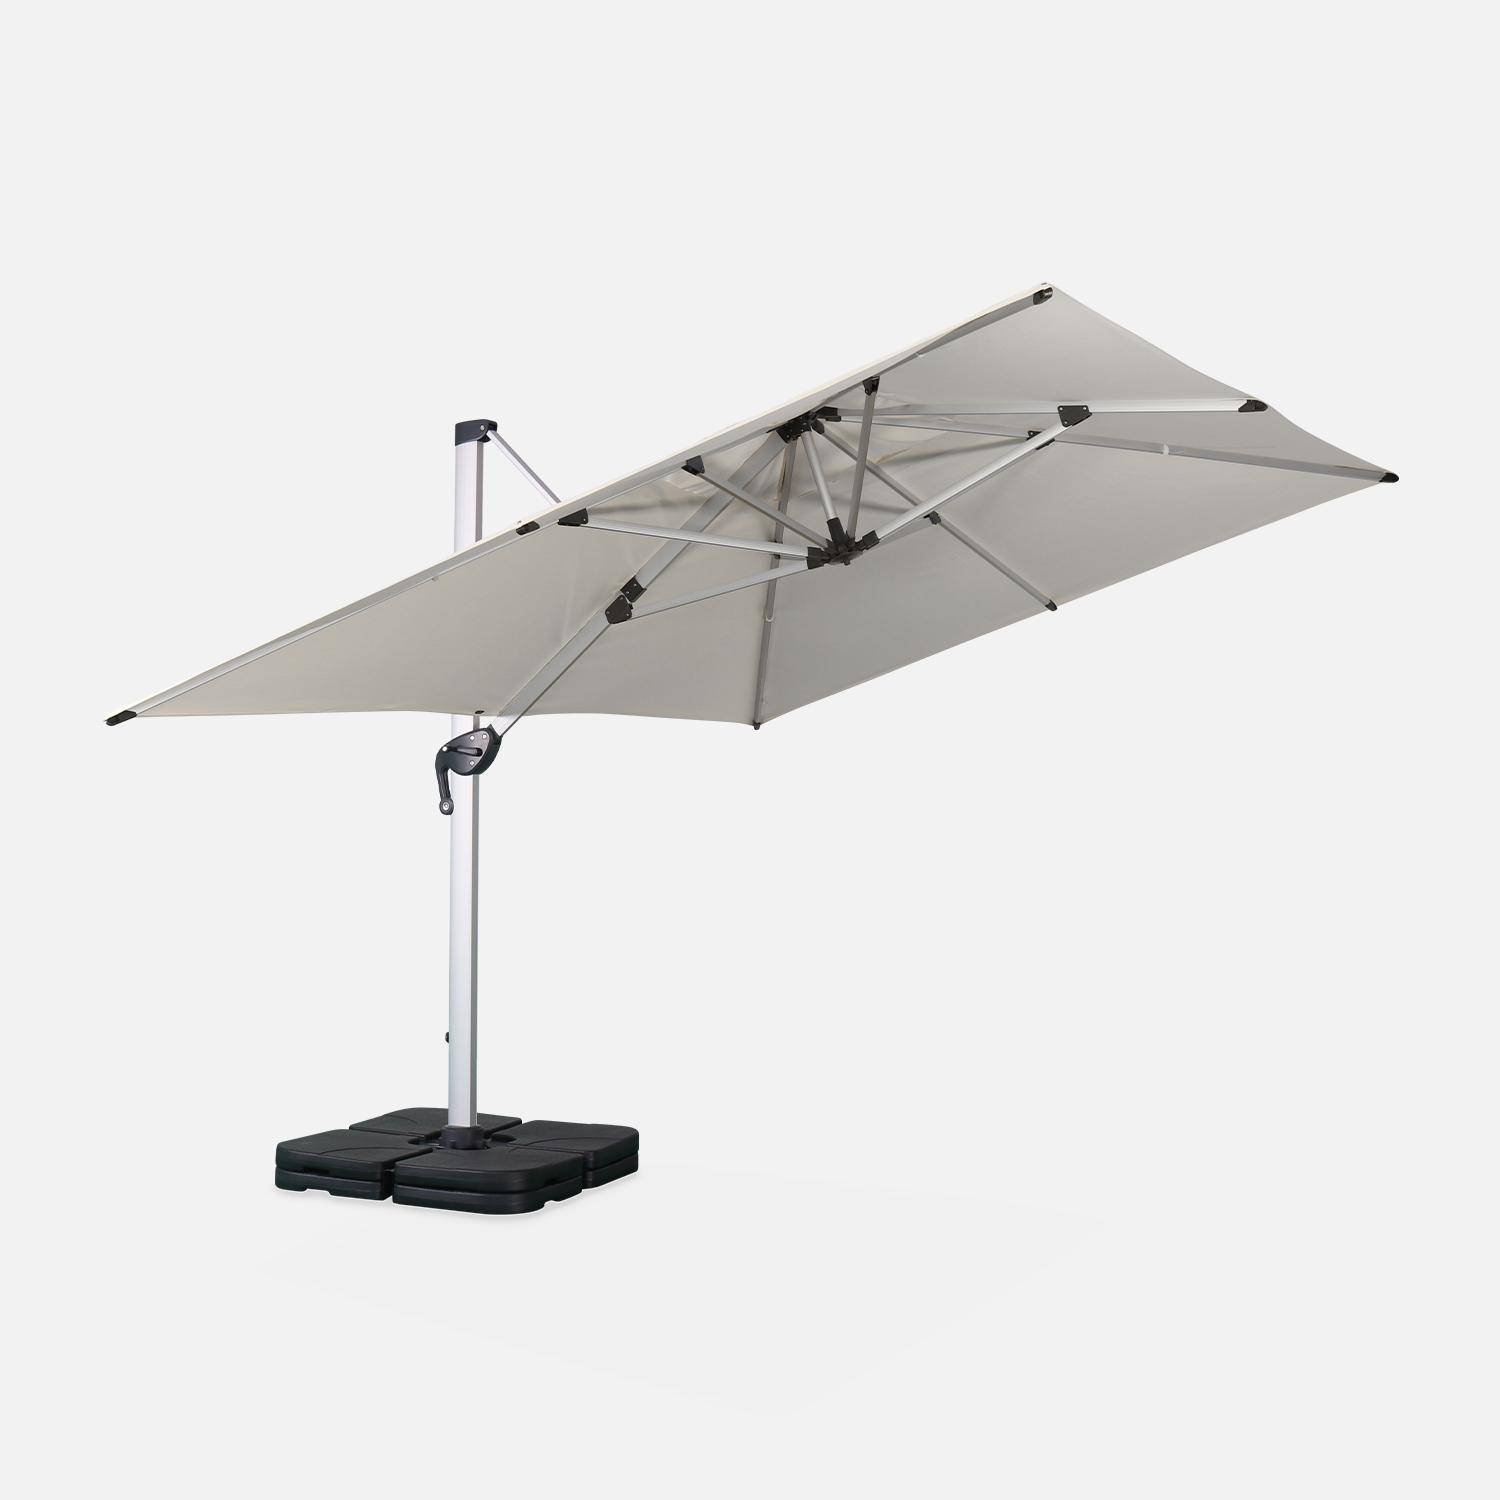 Parasol déporté haut de gamme carré 4x4m – PYLA Beige – Toile Sunbrella ® fabriquée en France, par Dickson, structure en aluminium anodisé, rotatif, housse de protection Photo2